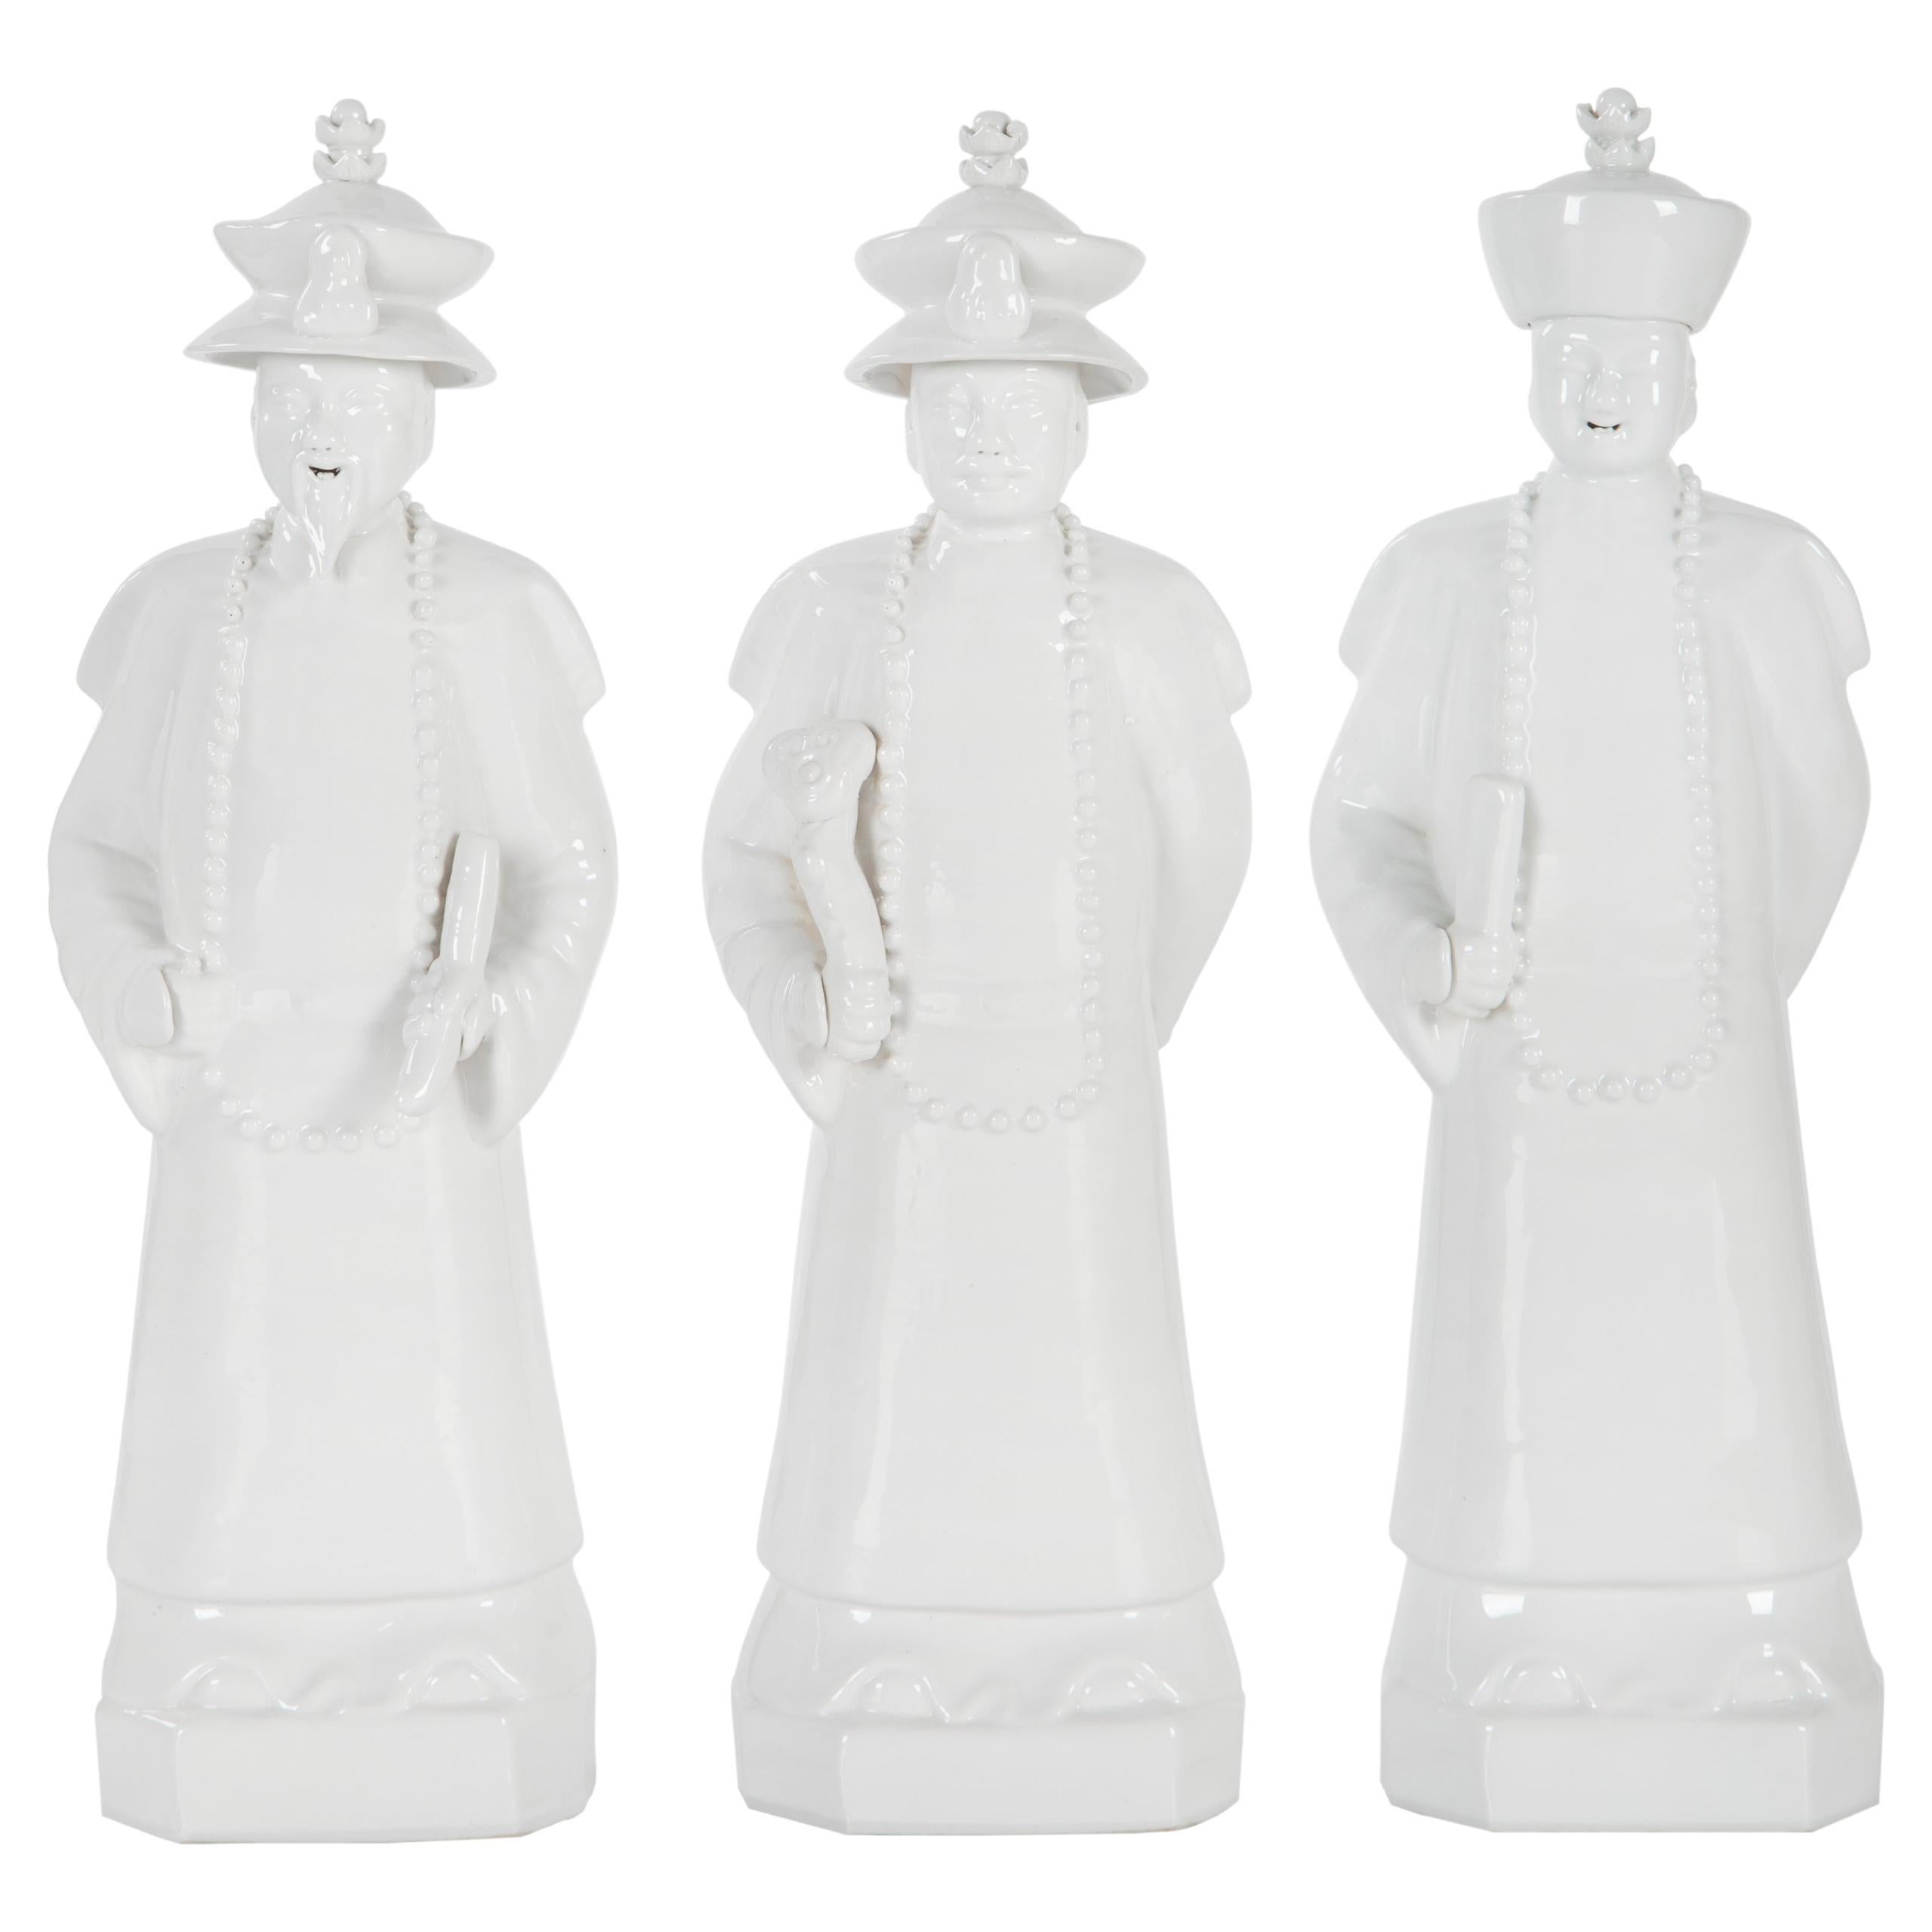 Ensemble de 3 statues d'empereurs Qing, blanches, moulées à la main et peintes à la main